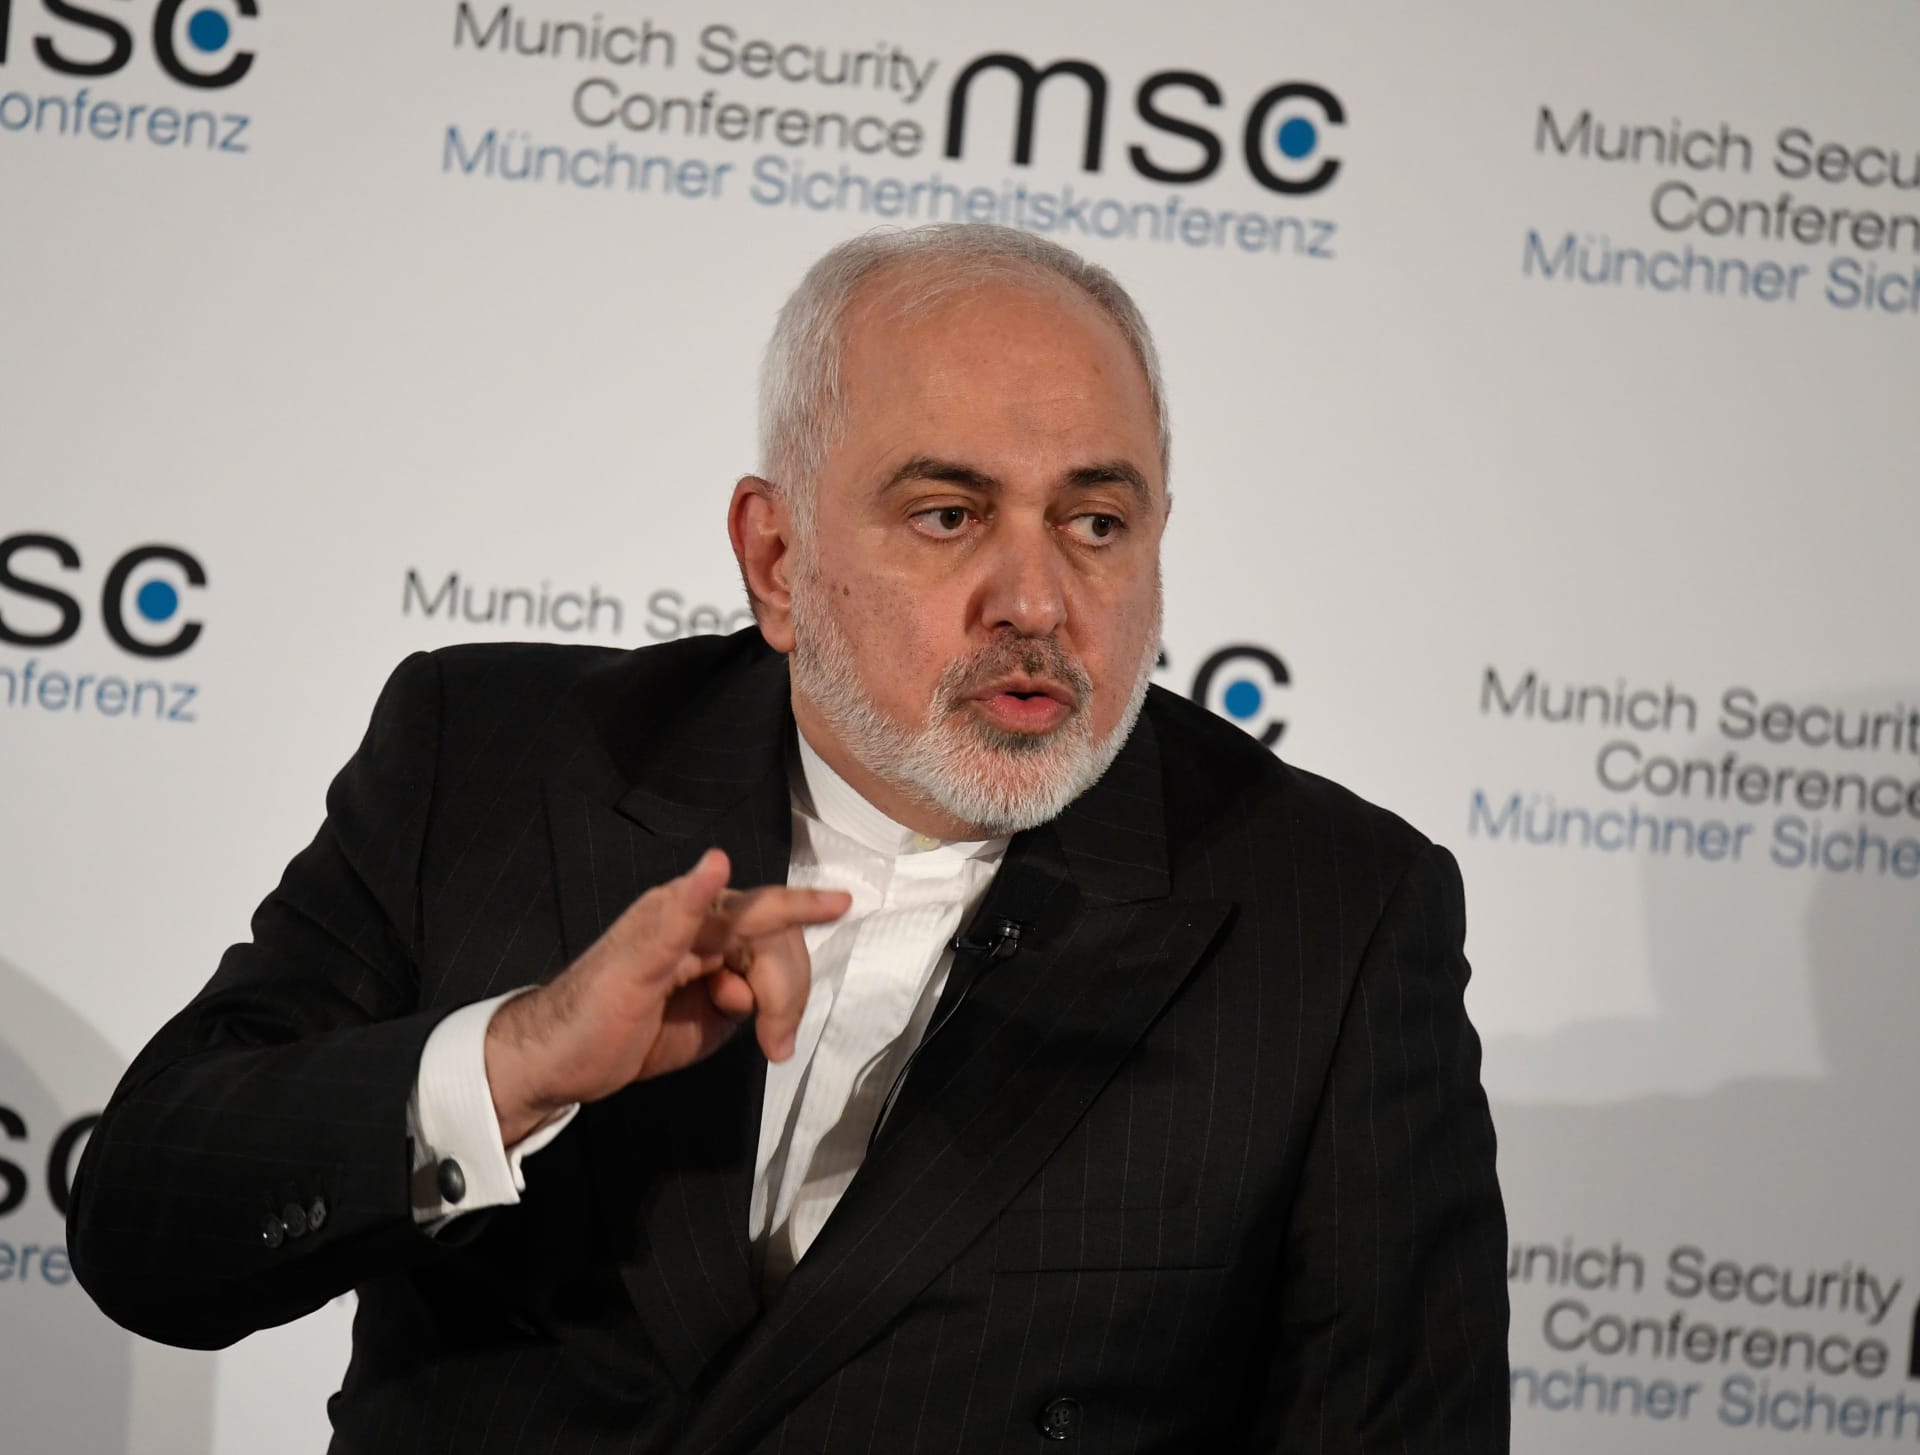 ظريف يتهم إسرائيل بالتخطيط لهجمات في العراق لتندلع الحرب بين إيران وأمريكا